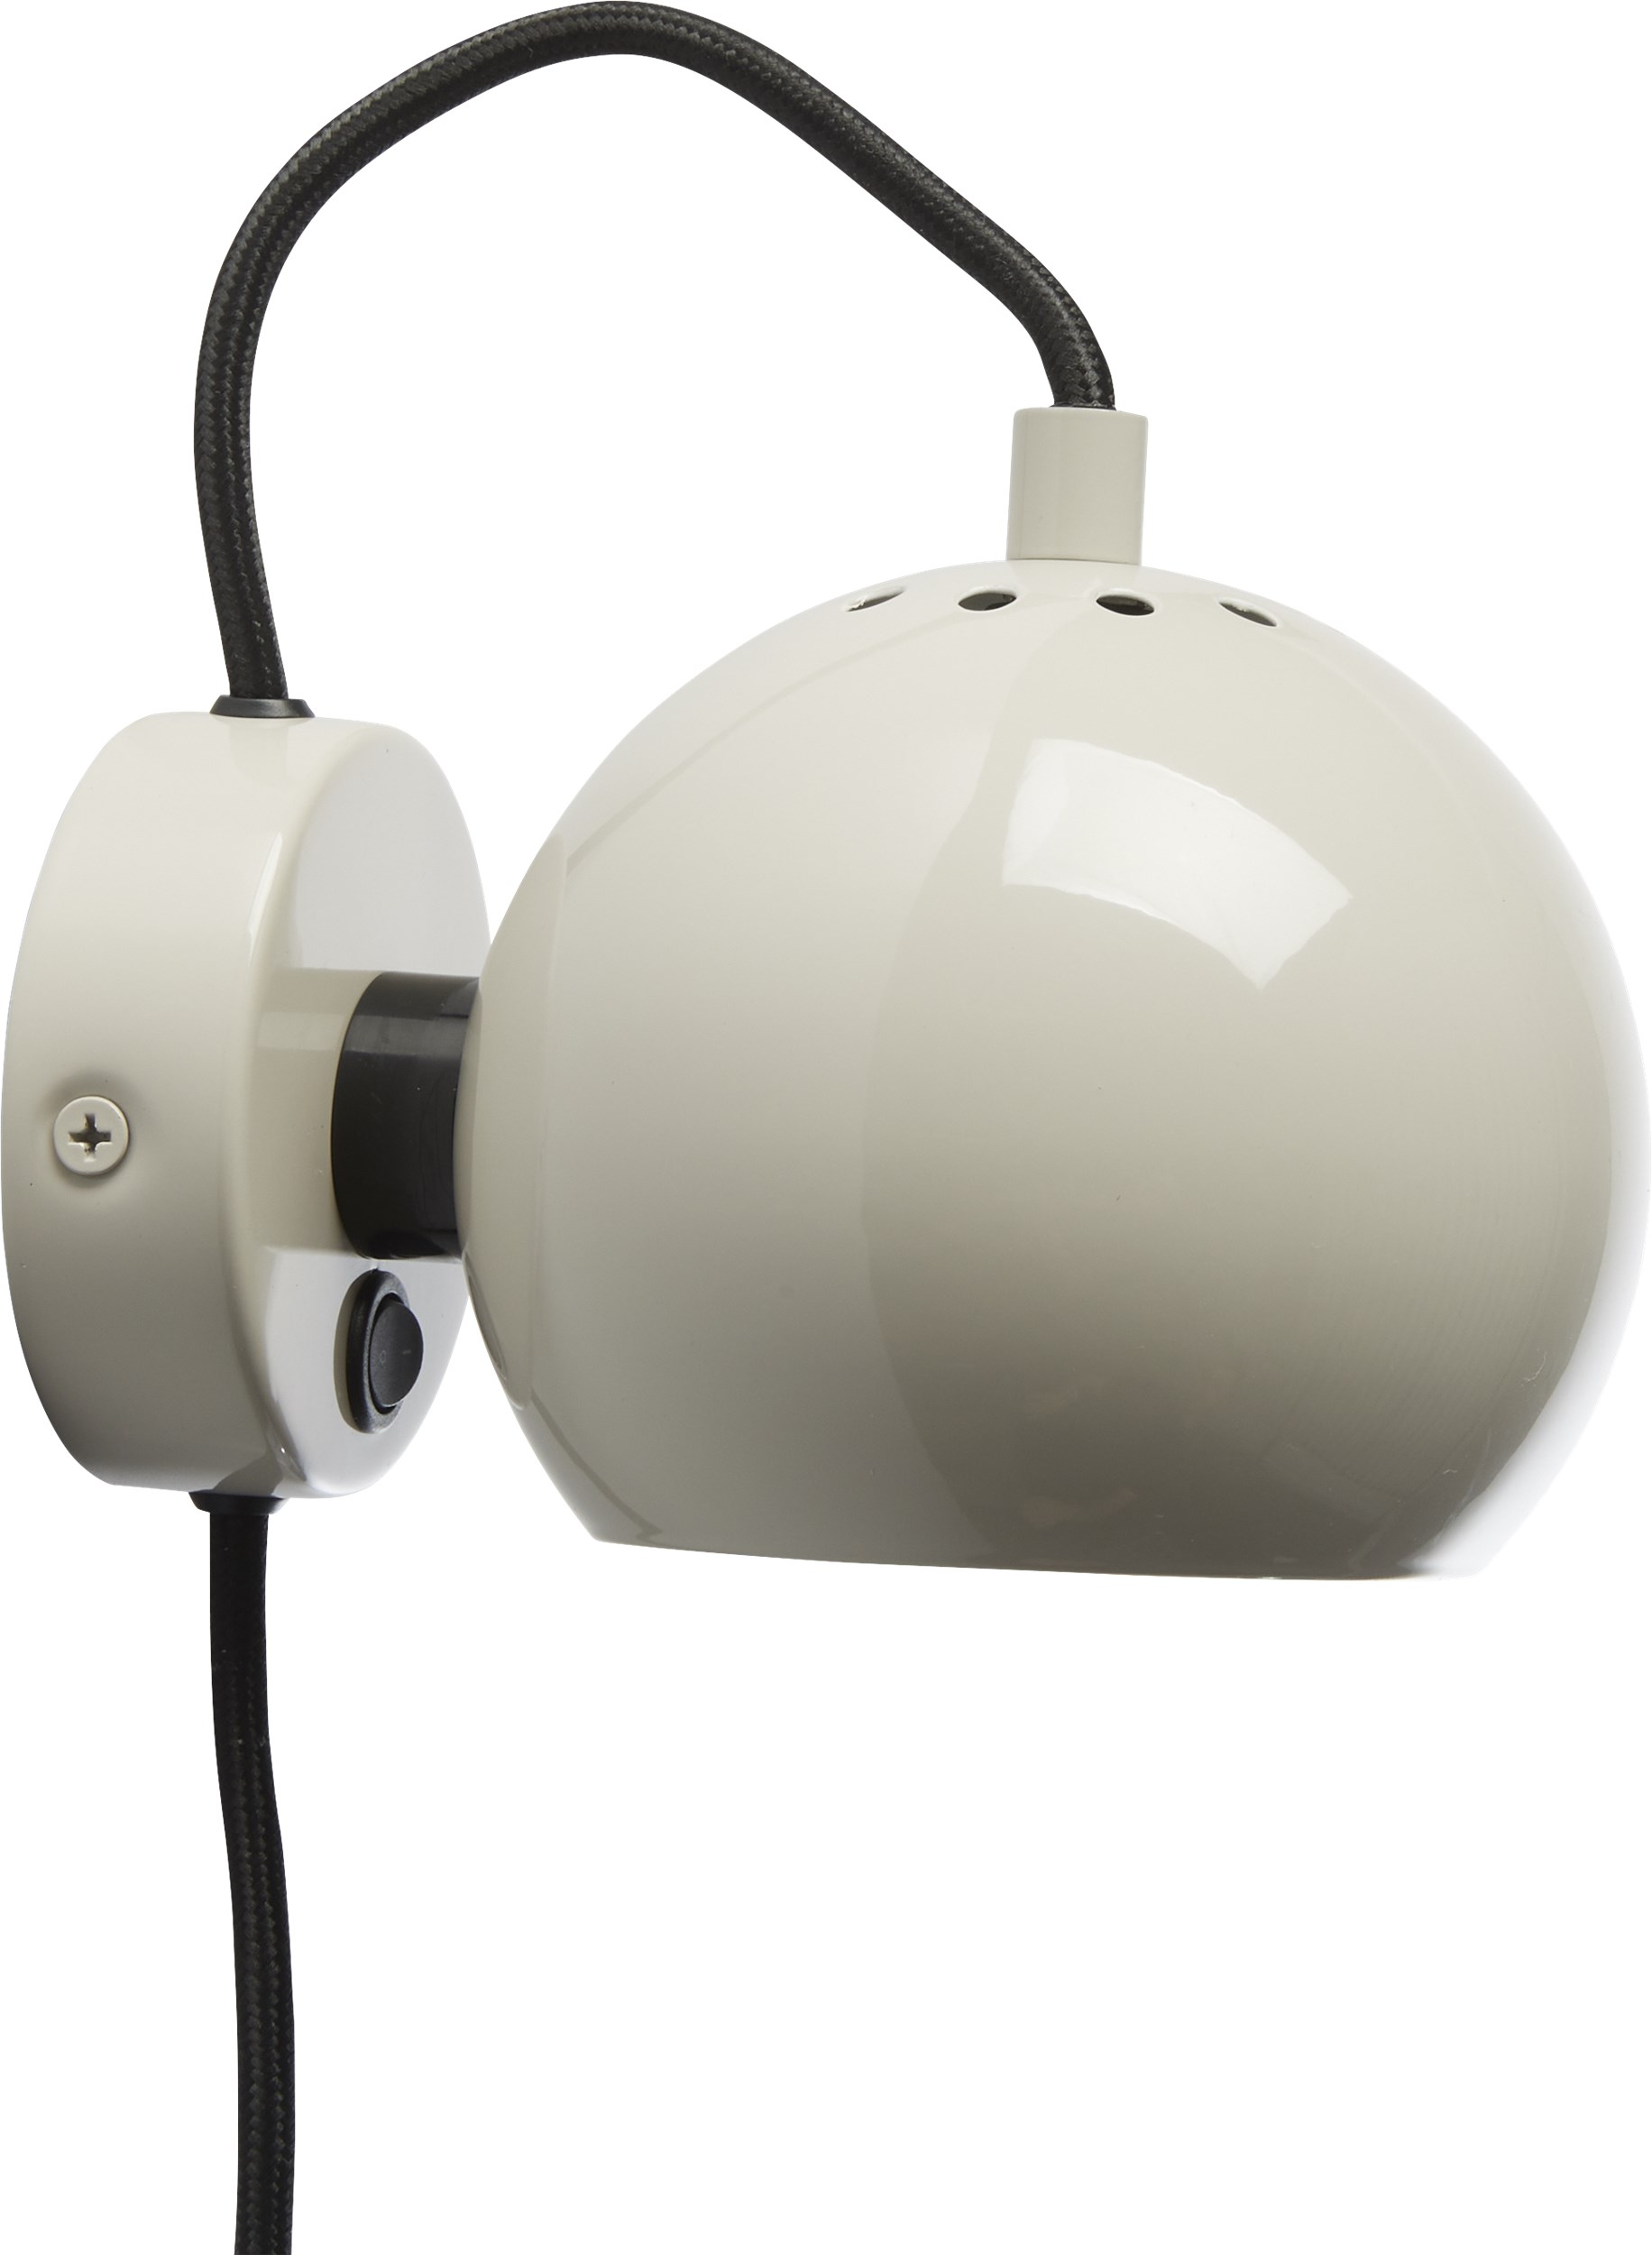 Ball Vägglampa 12 cm - Pale grey glossy, svart textilsladd och med strömbrytare på basen